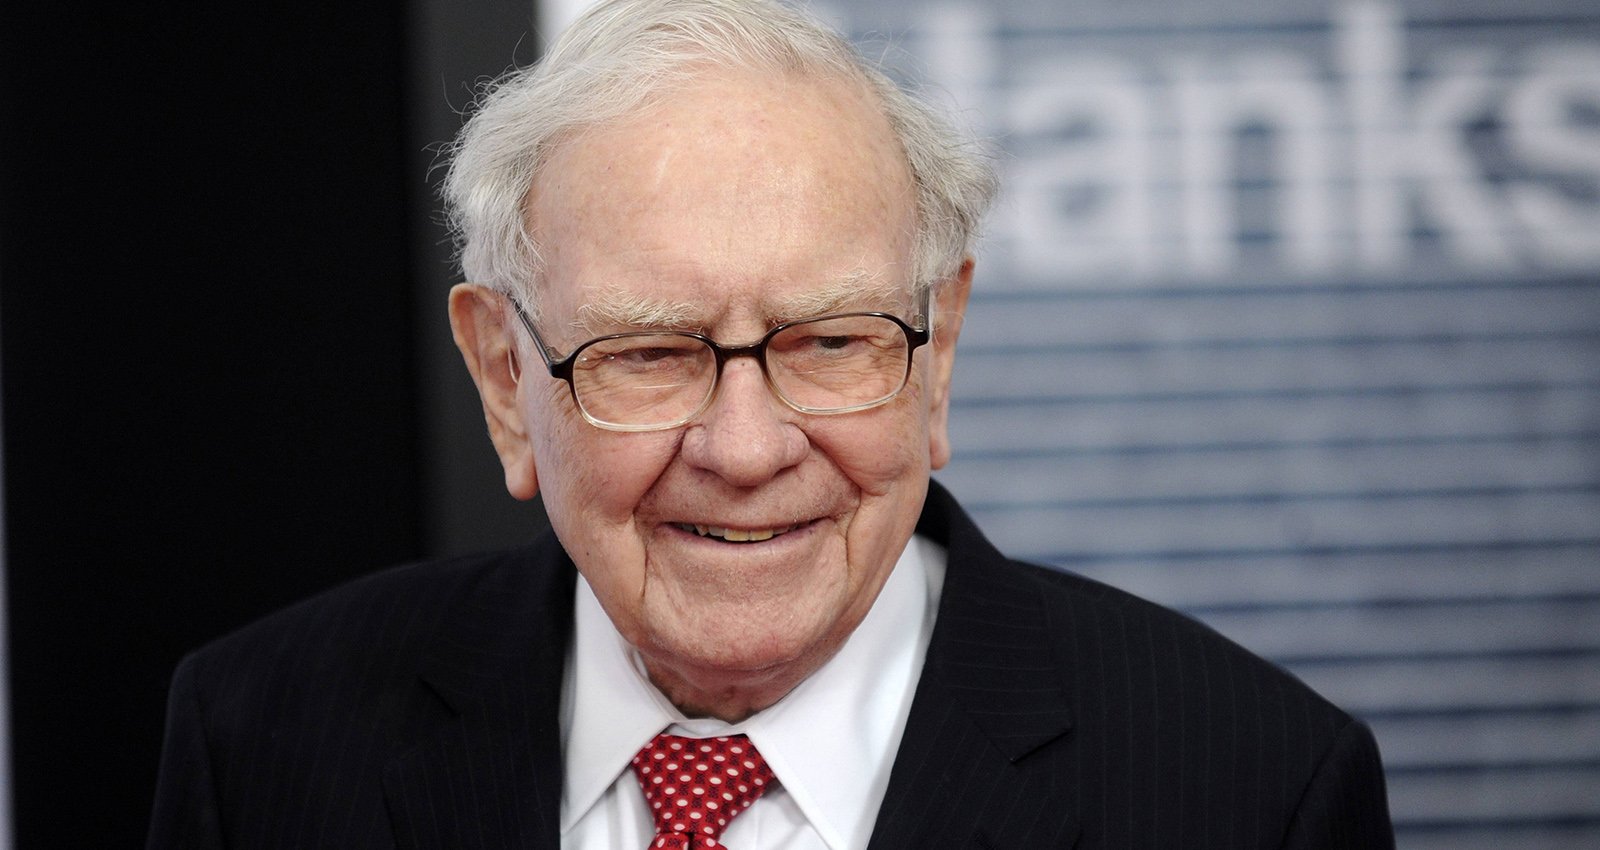 In welche Aktien investiert Warren Buffett? Die Top 10 von Berkshire Hathaway